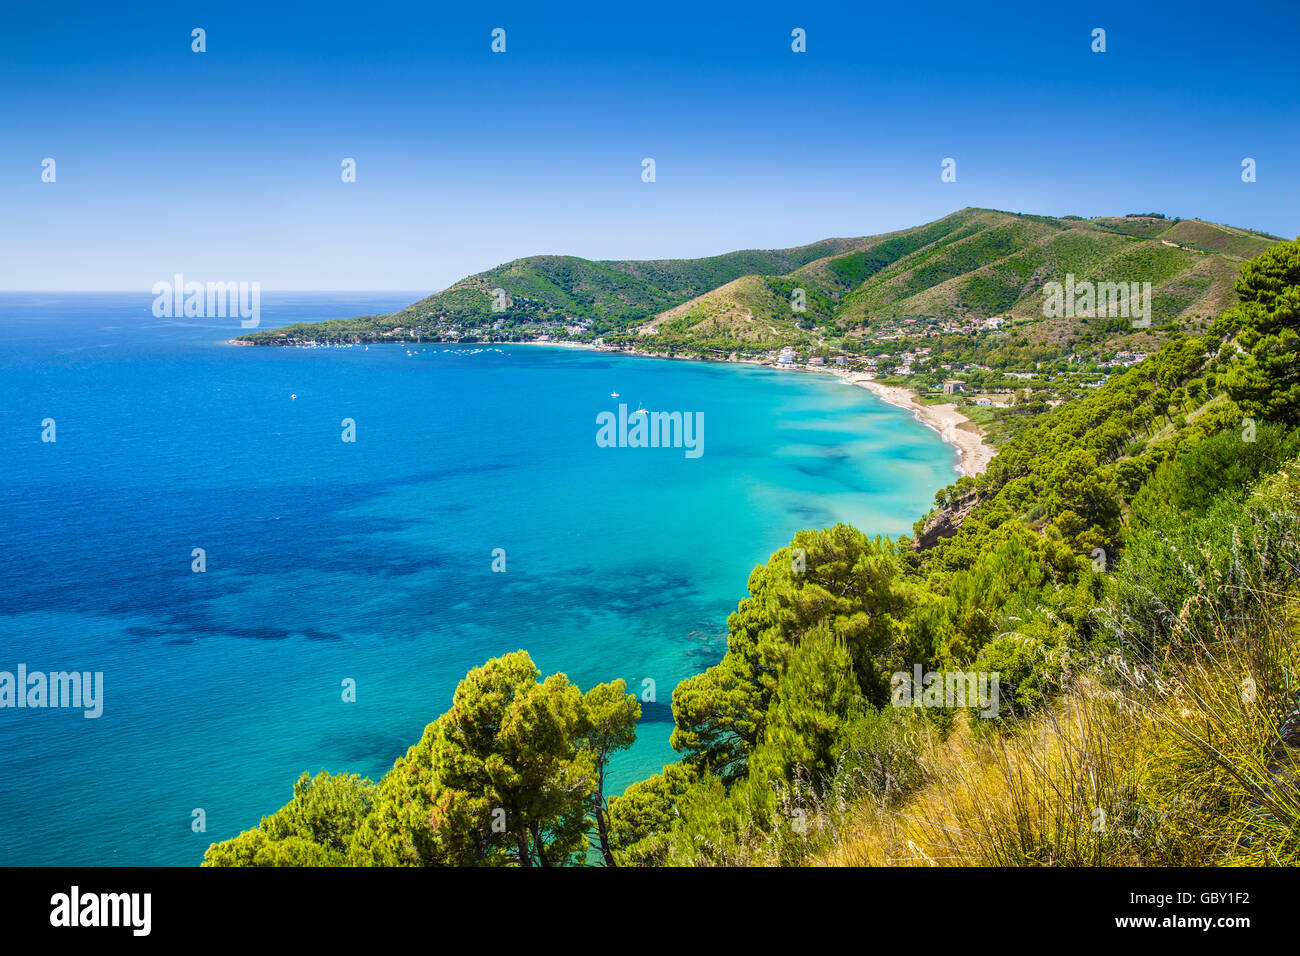 Vista panorámica del hermoso paisaje costero en la costa Cilentan, provincia de Salerno, Campania, sur de Italia Foto de stock